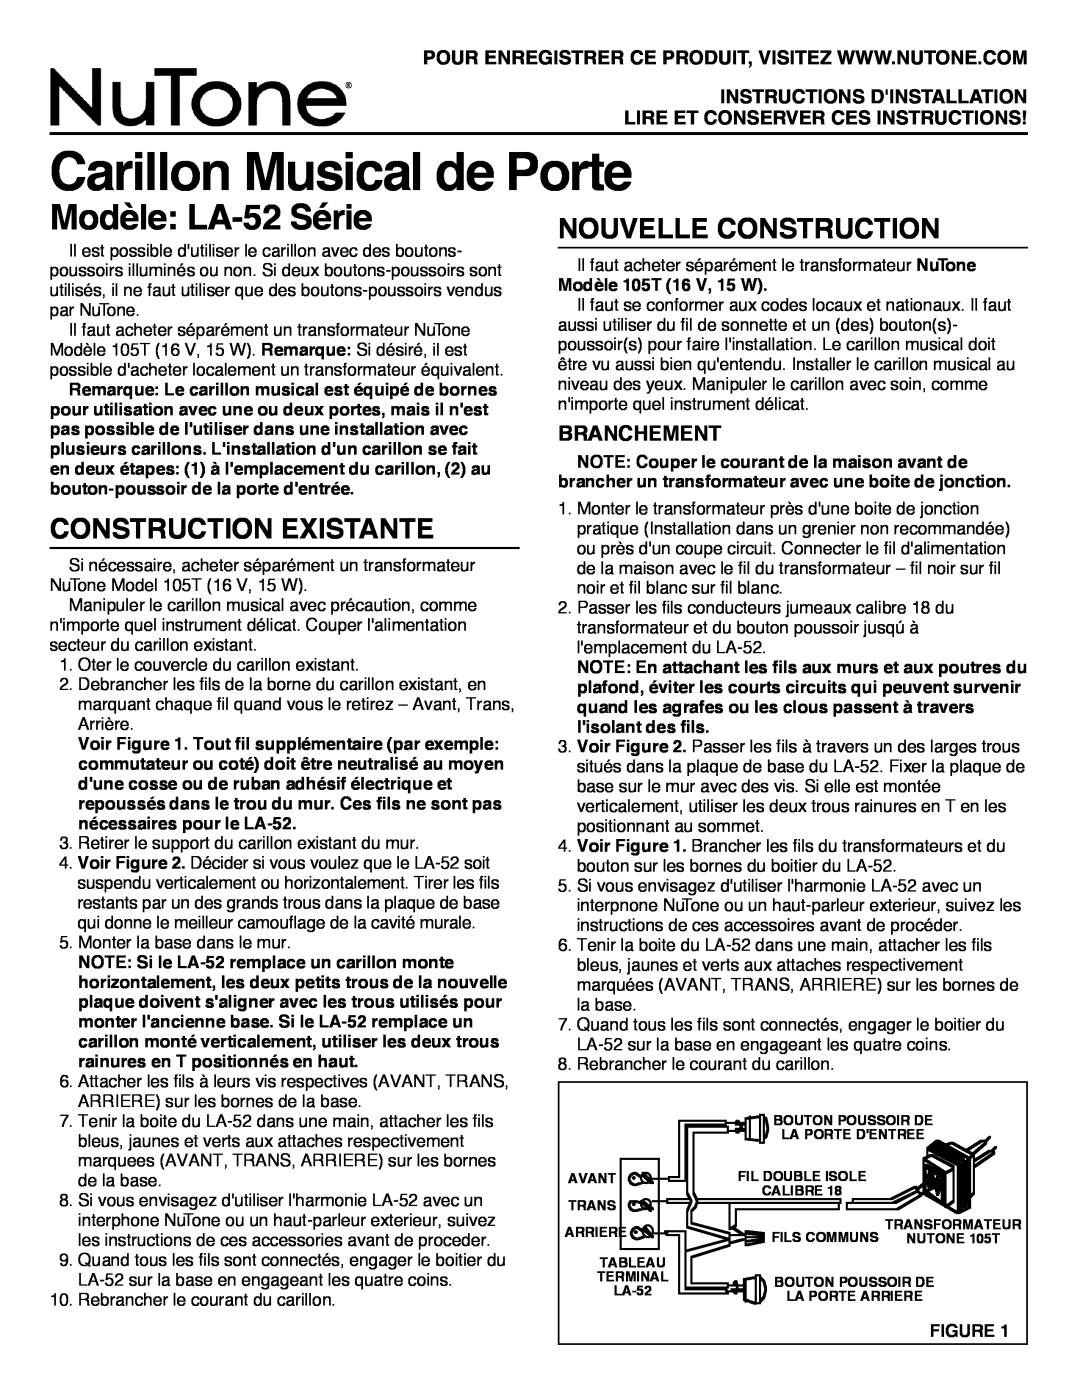 NuTone LA-52 Series Carillon Musical de Porte, Modèle LA-52Série, Construction Existante, Nouvelle Construction 